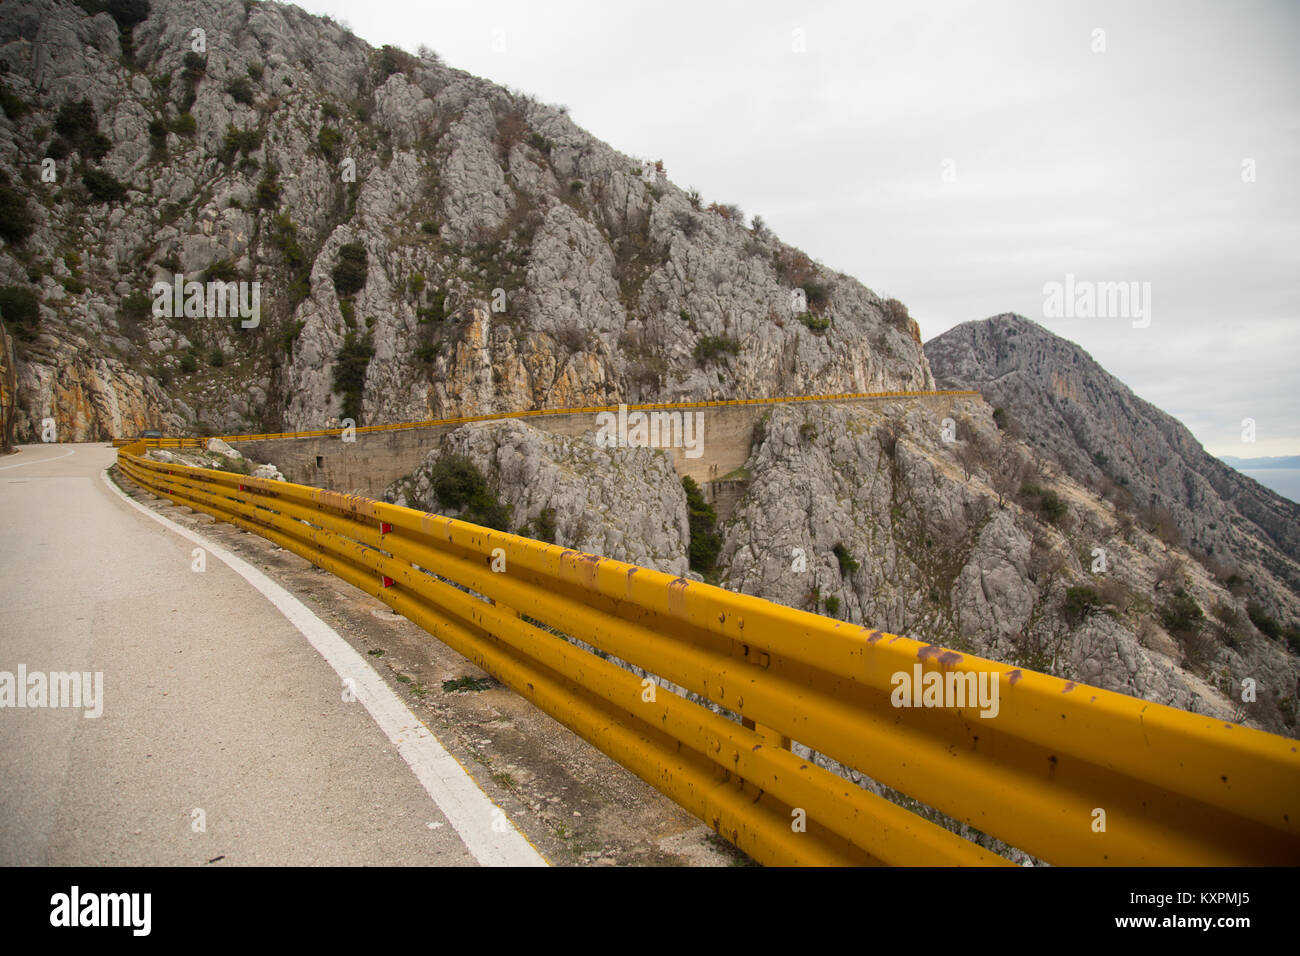 Autoroute de l'Adriatique, la route européenne E65, avec ses barrières de circulation jaune près de Podgora en Croatie Banque D'Images